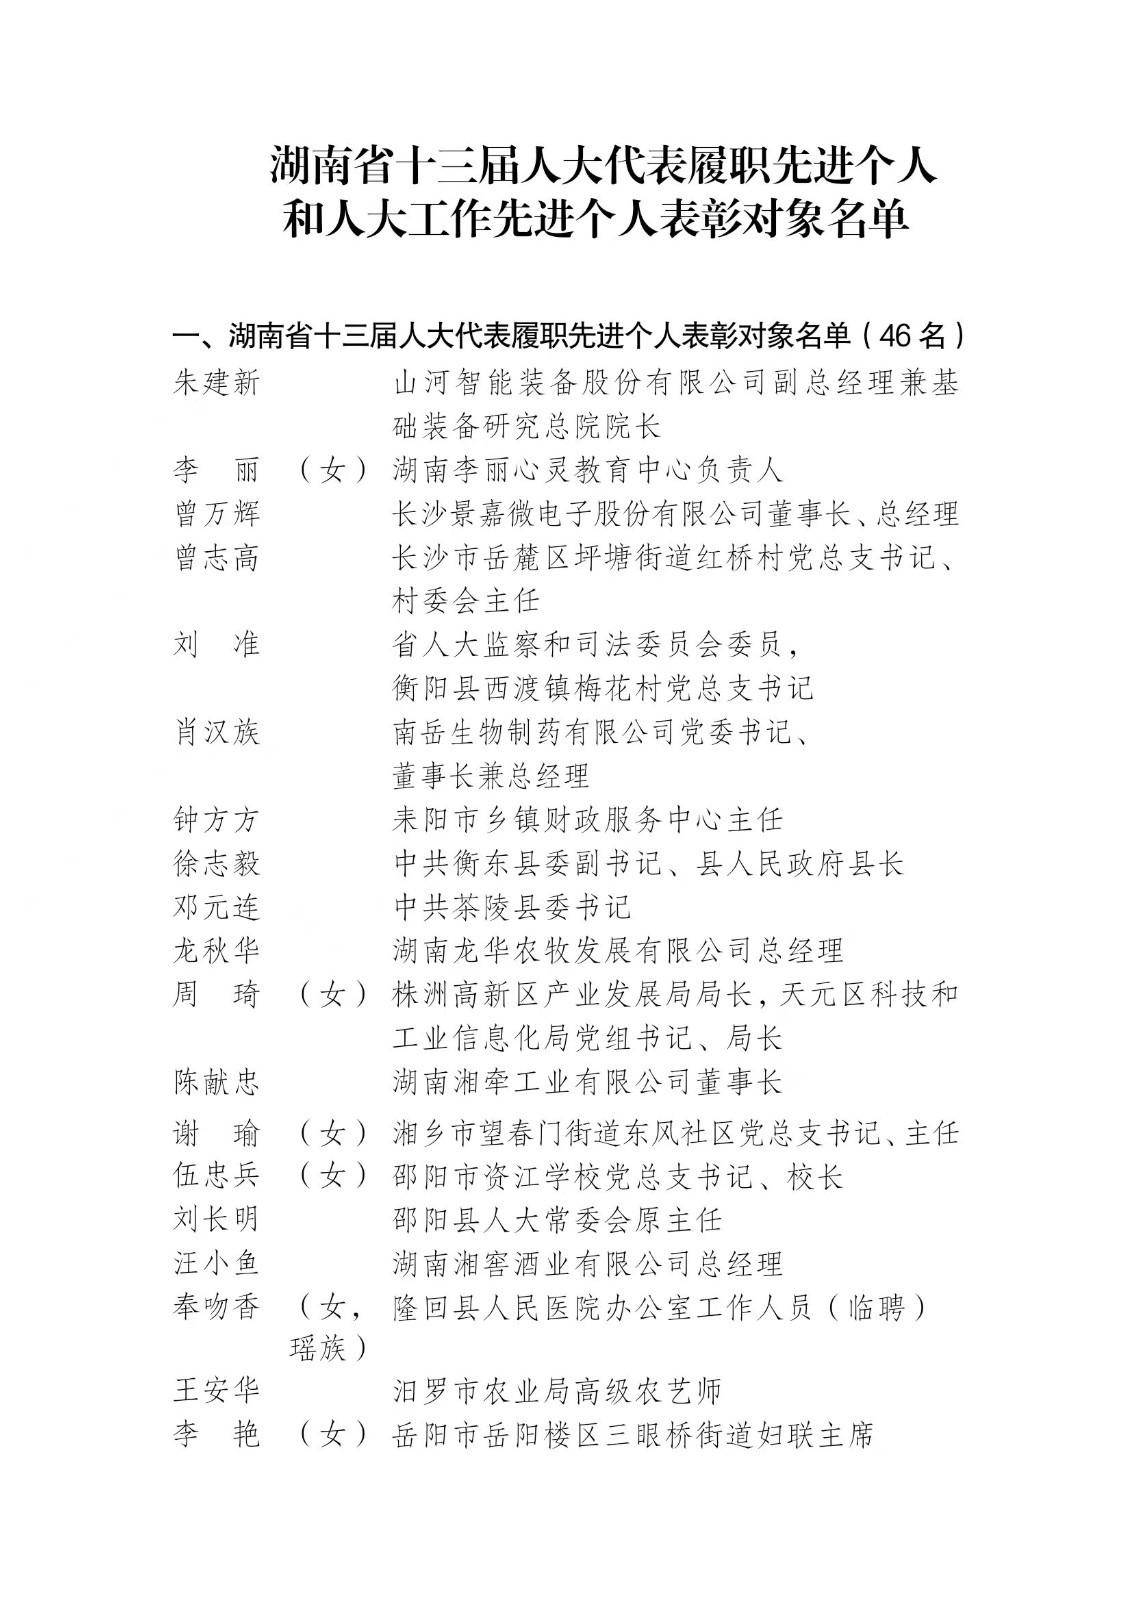 名单公示！湖南拟表彰98名省人大代表和人大工作者